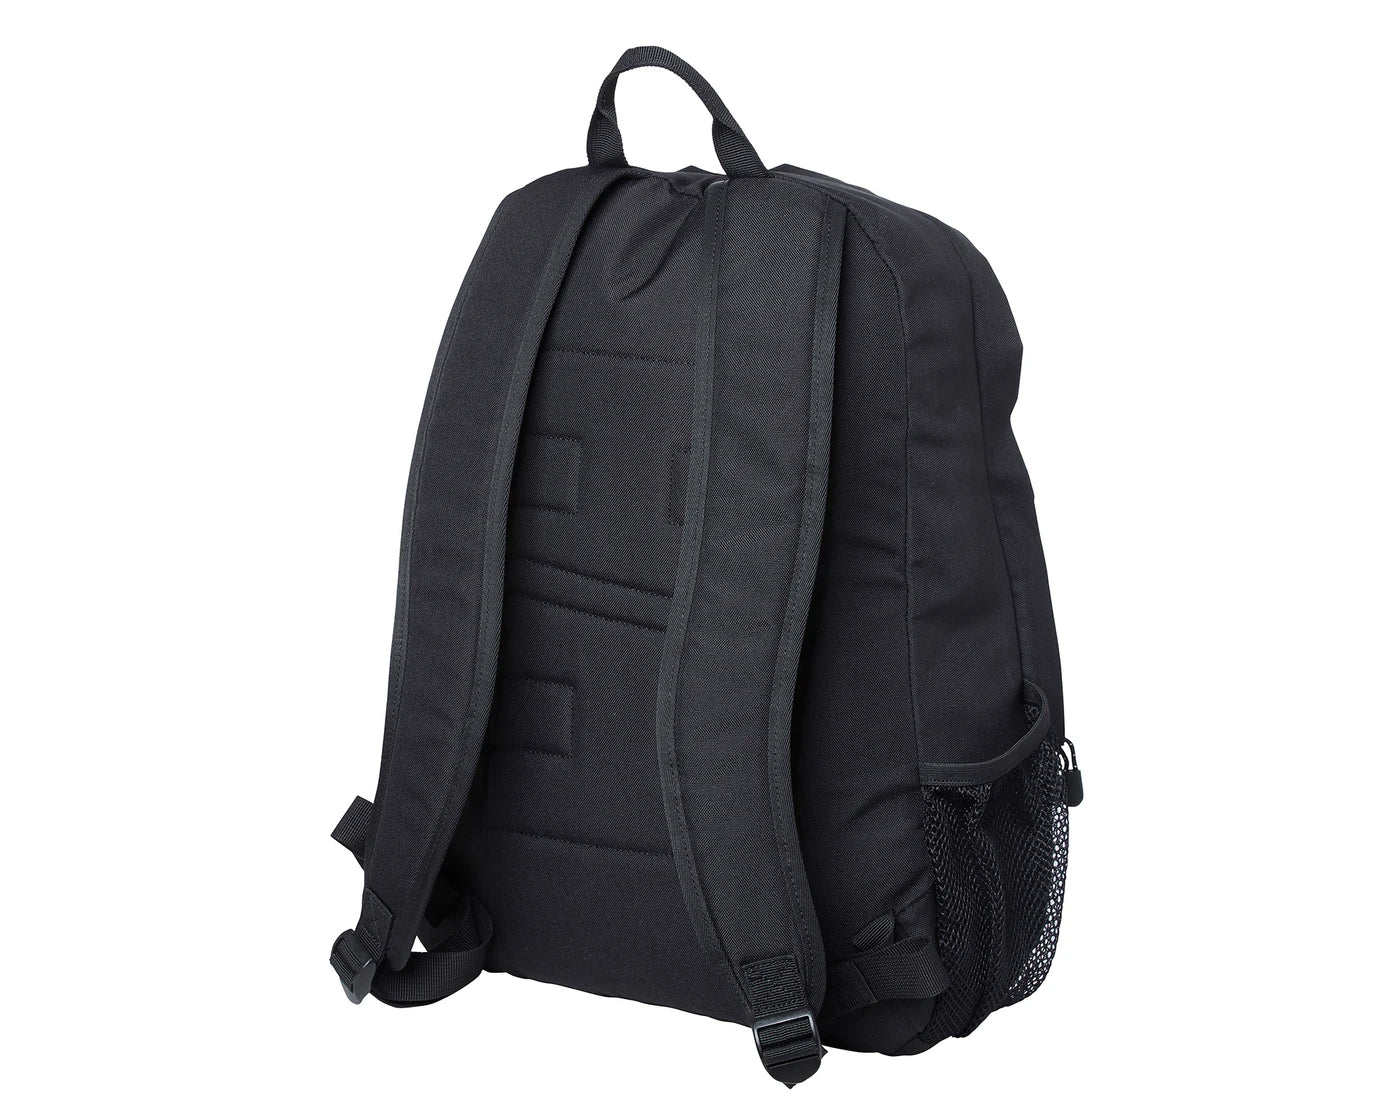 Dubliner 2.0 Backpack